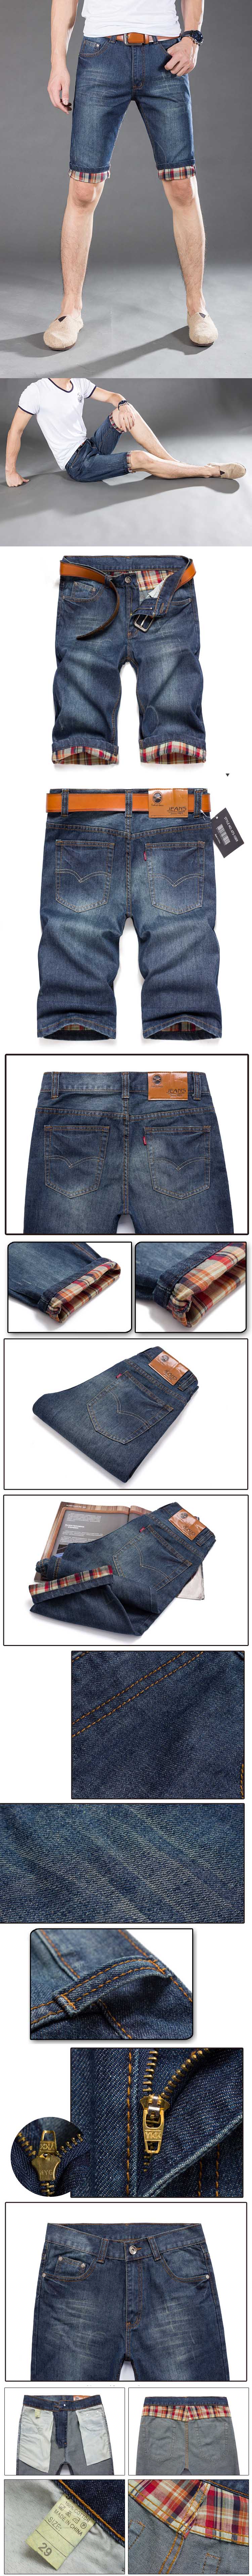 cari celana jeans pria model pendek? ada ratusan model celana jeans pria di pfp store. klik dan pesan online sekarang